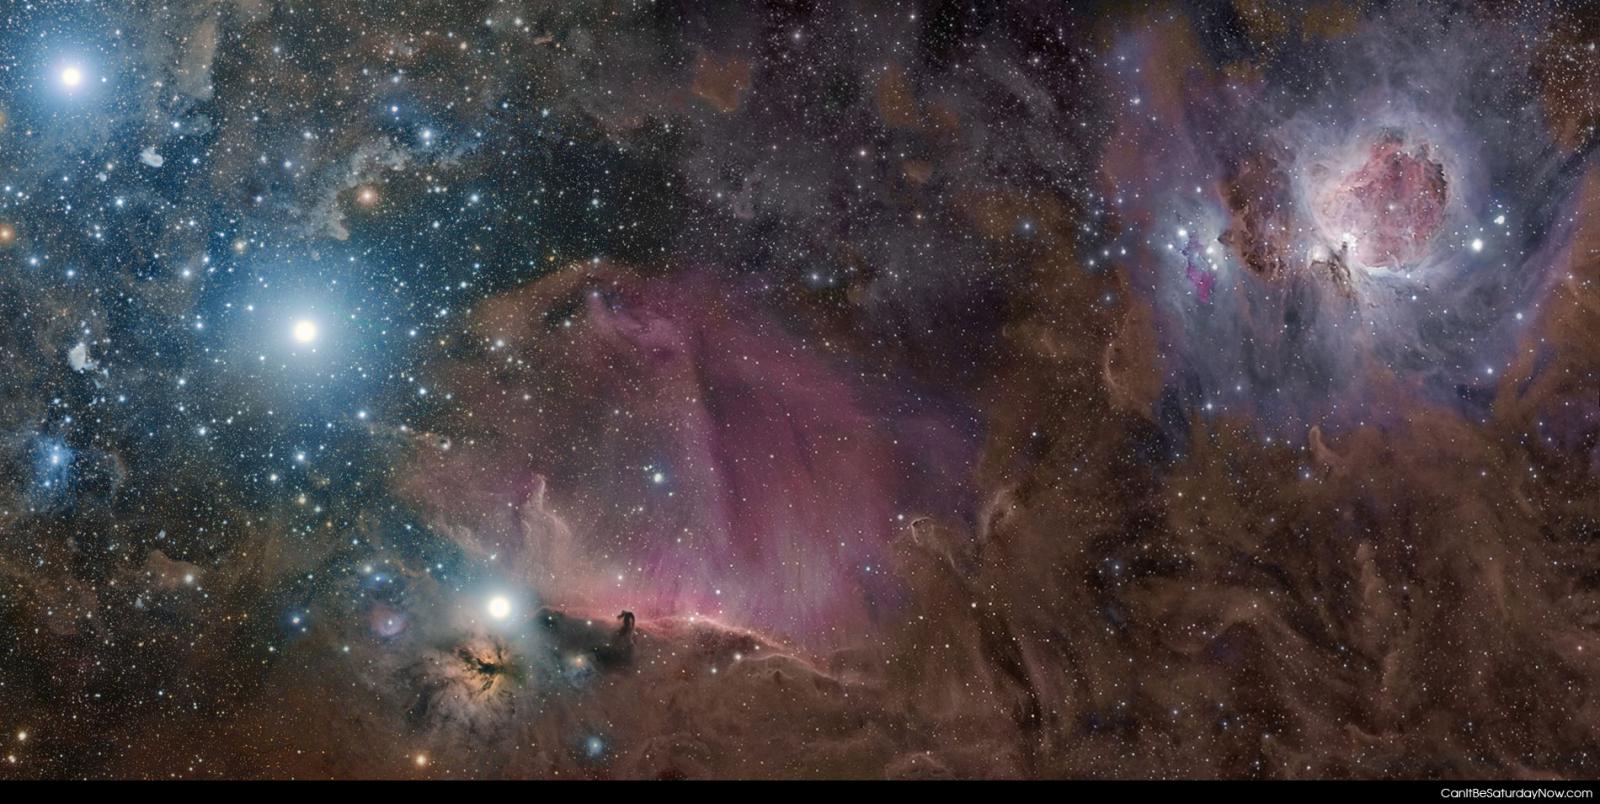 NASA potd 3 - Orion deep <br>Thanks to NASA's Astronomy Picture of the Day http://apod.nasa.gov/apod/archivepix.html